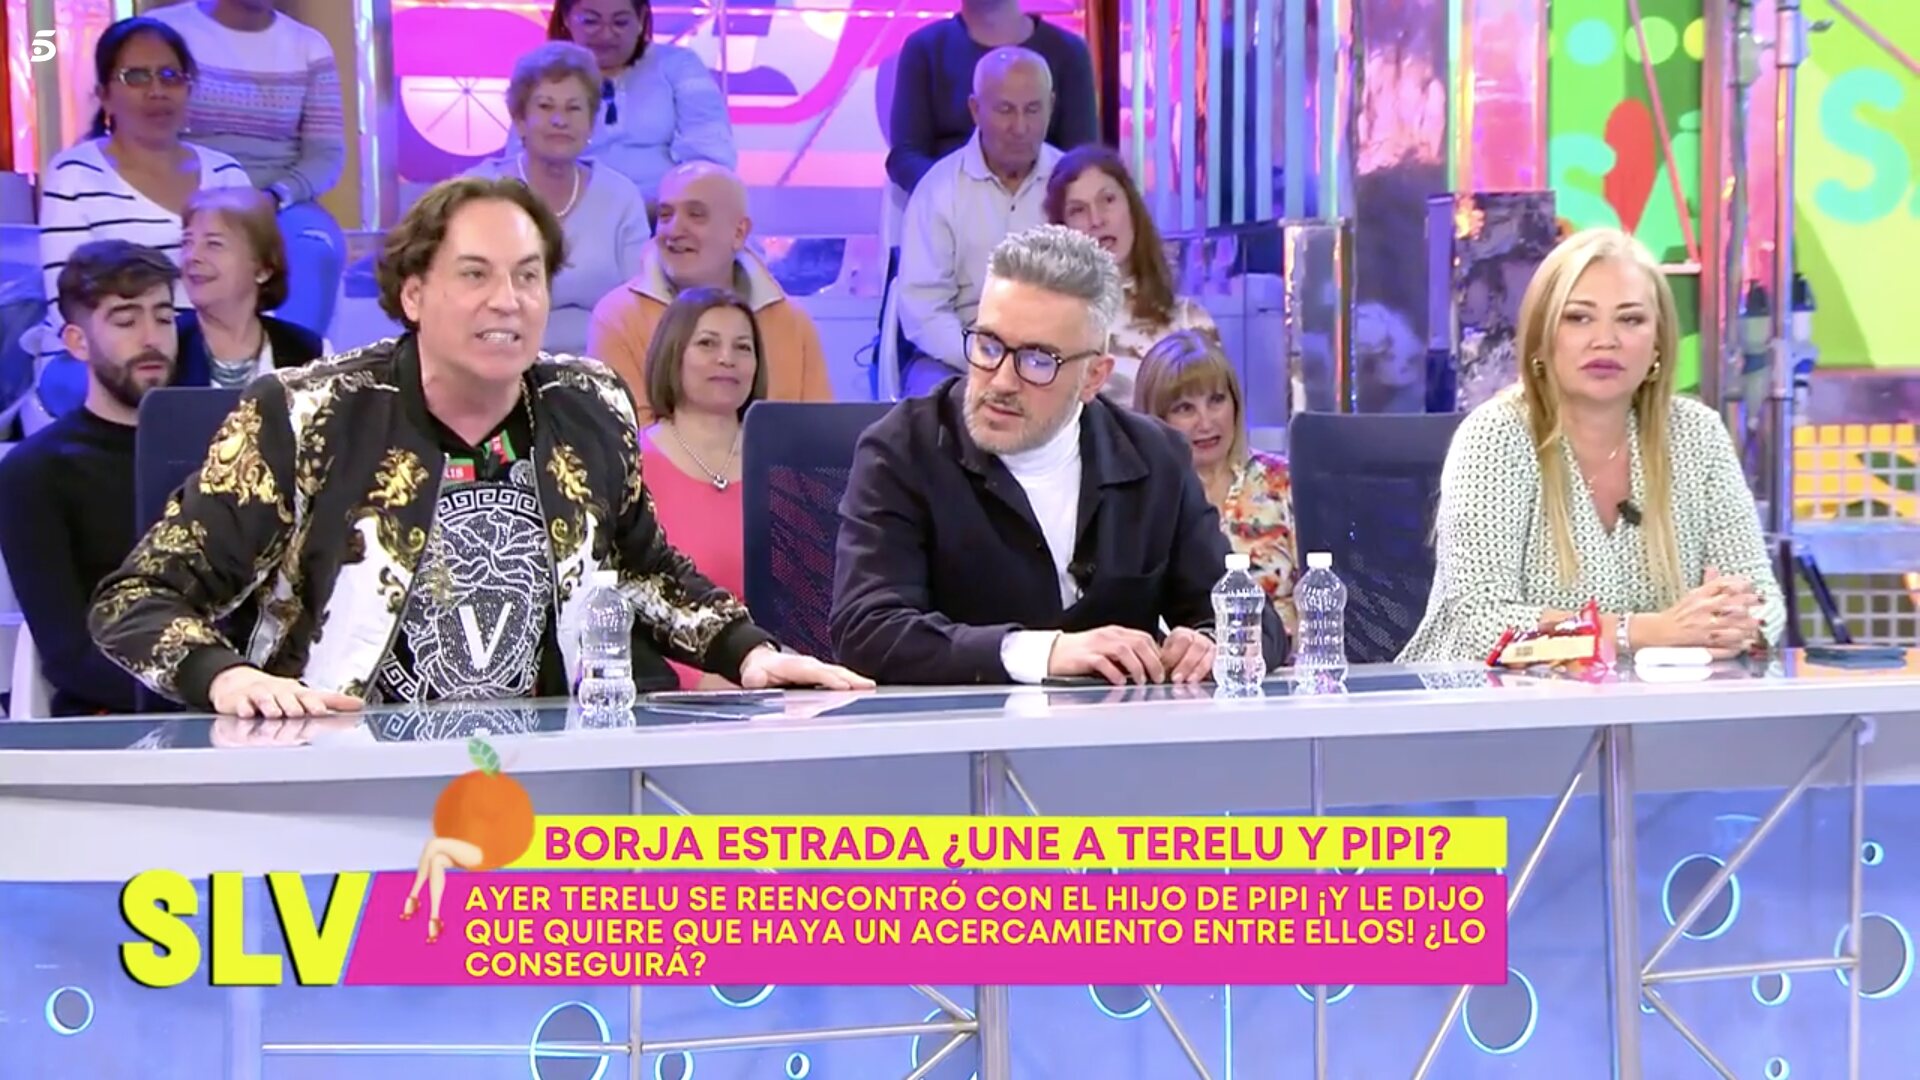 Pipi Estrada lee los mensajes de Terelu / Foto: Telecinco.es